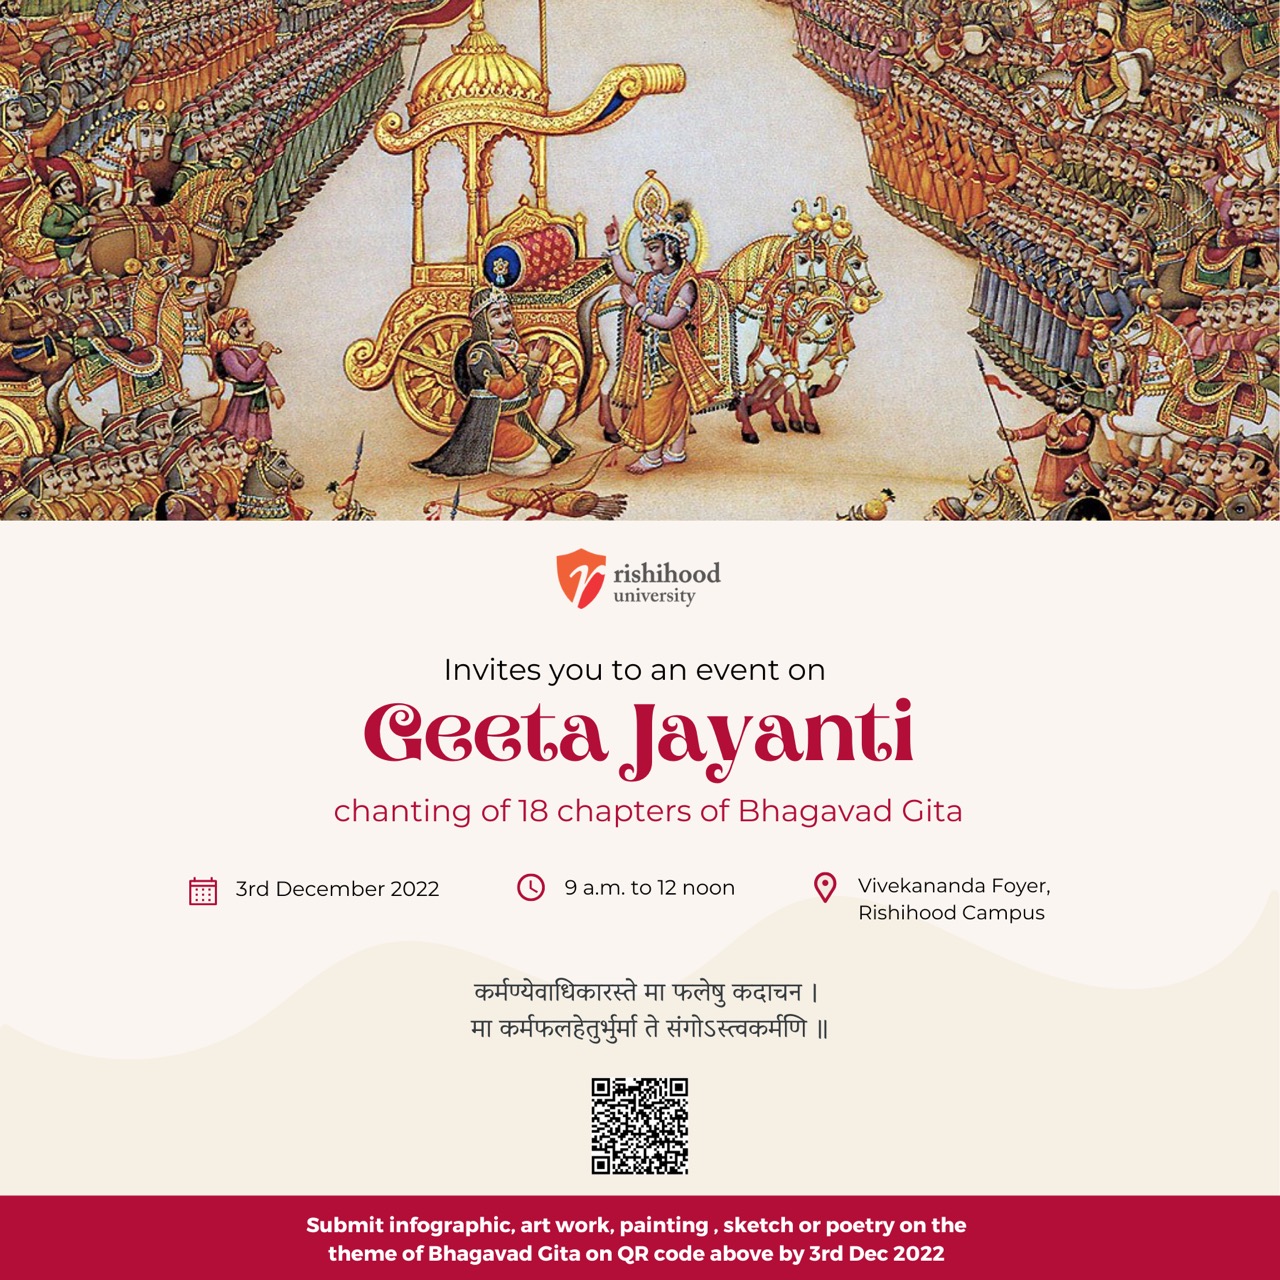 Celebrate the Geeta Jayanti